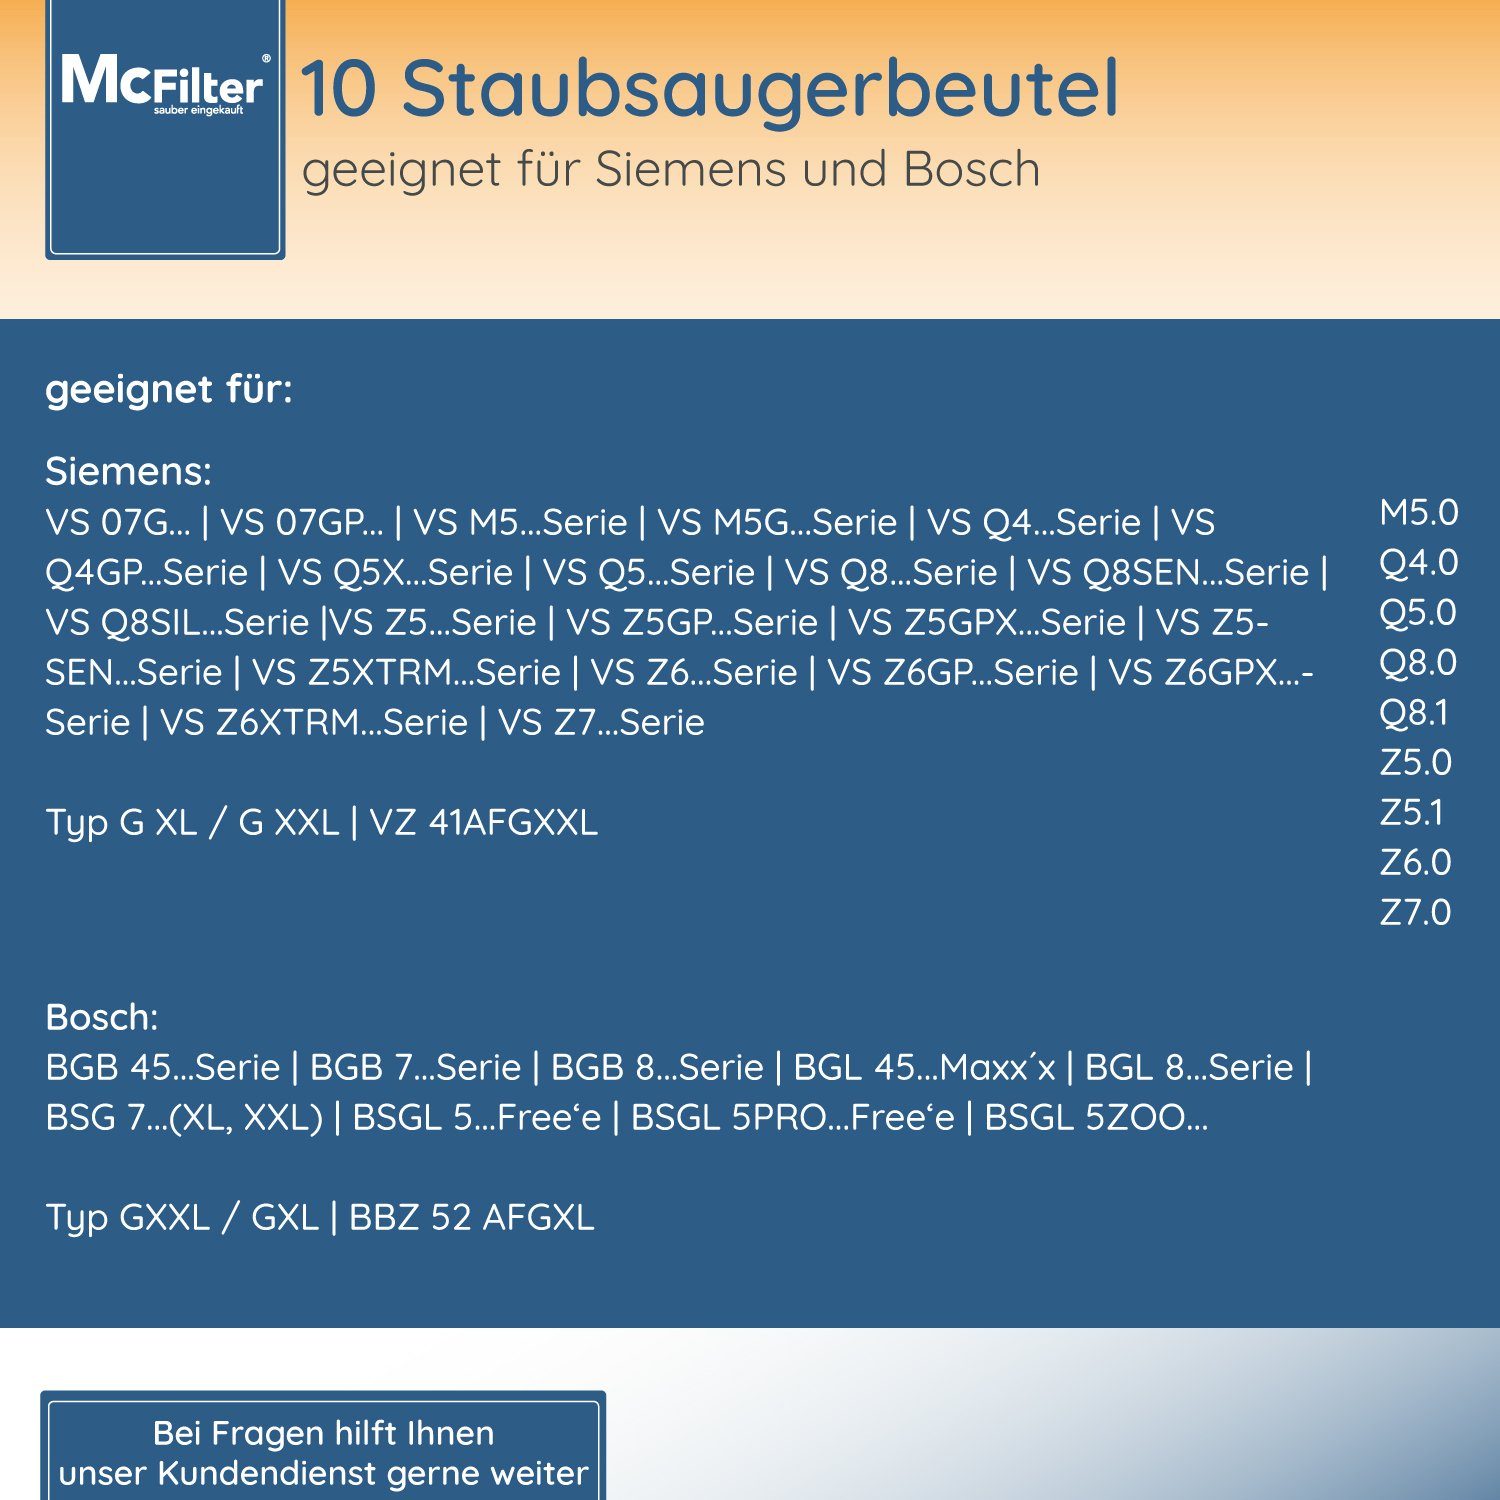 für passend Beutel McFilter 5-lagiger Filter Staubsauger, St., VSZ7442S mit Siemens 10 Staubsaugerbeutel, Hygieneverschluss, inkl.